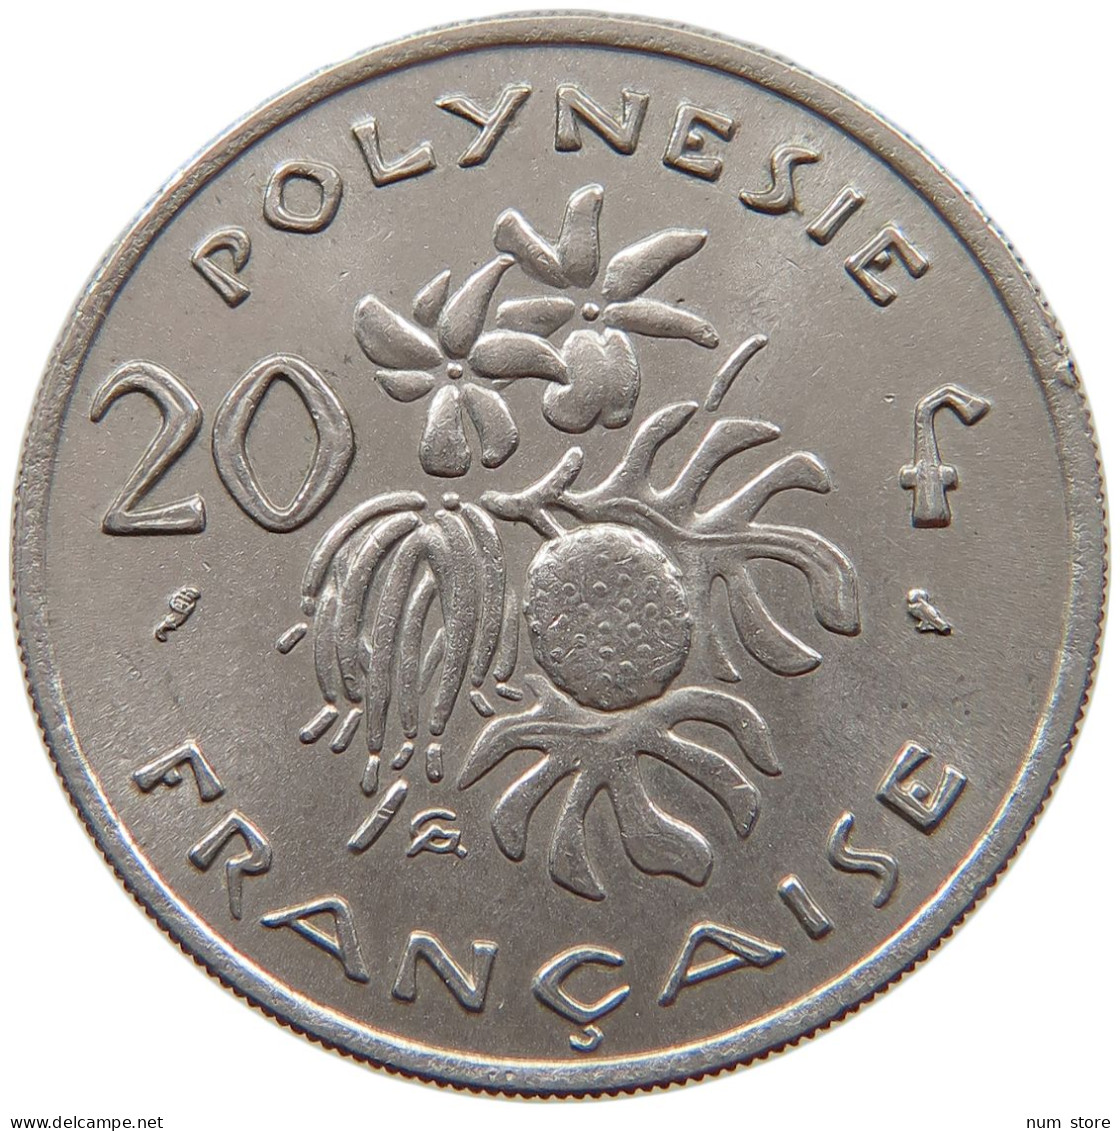 POLYNESIA 20 FRANCS 1967  #c064 0253 - French Polynesia